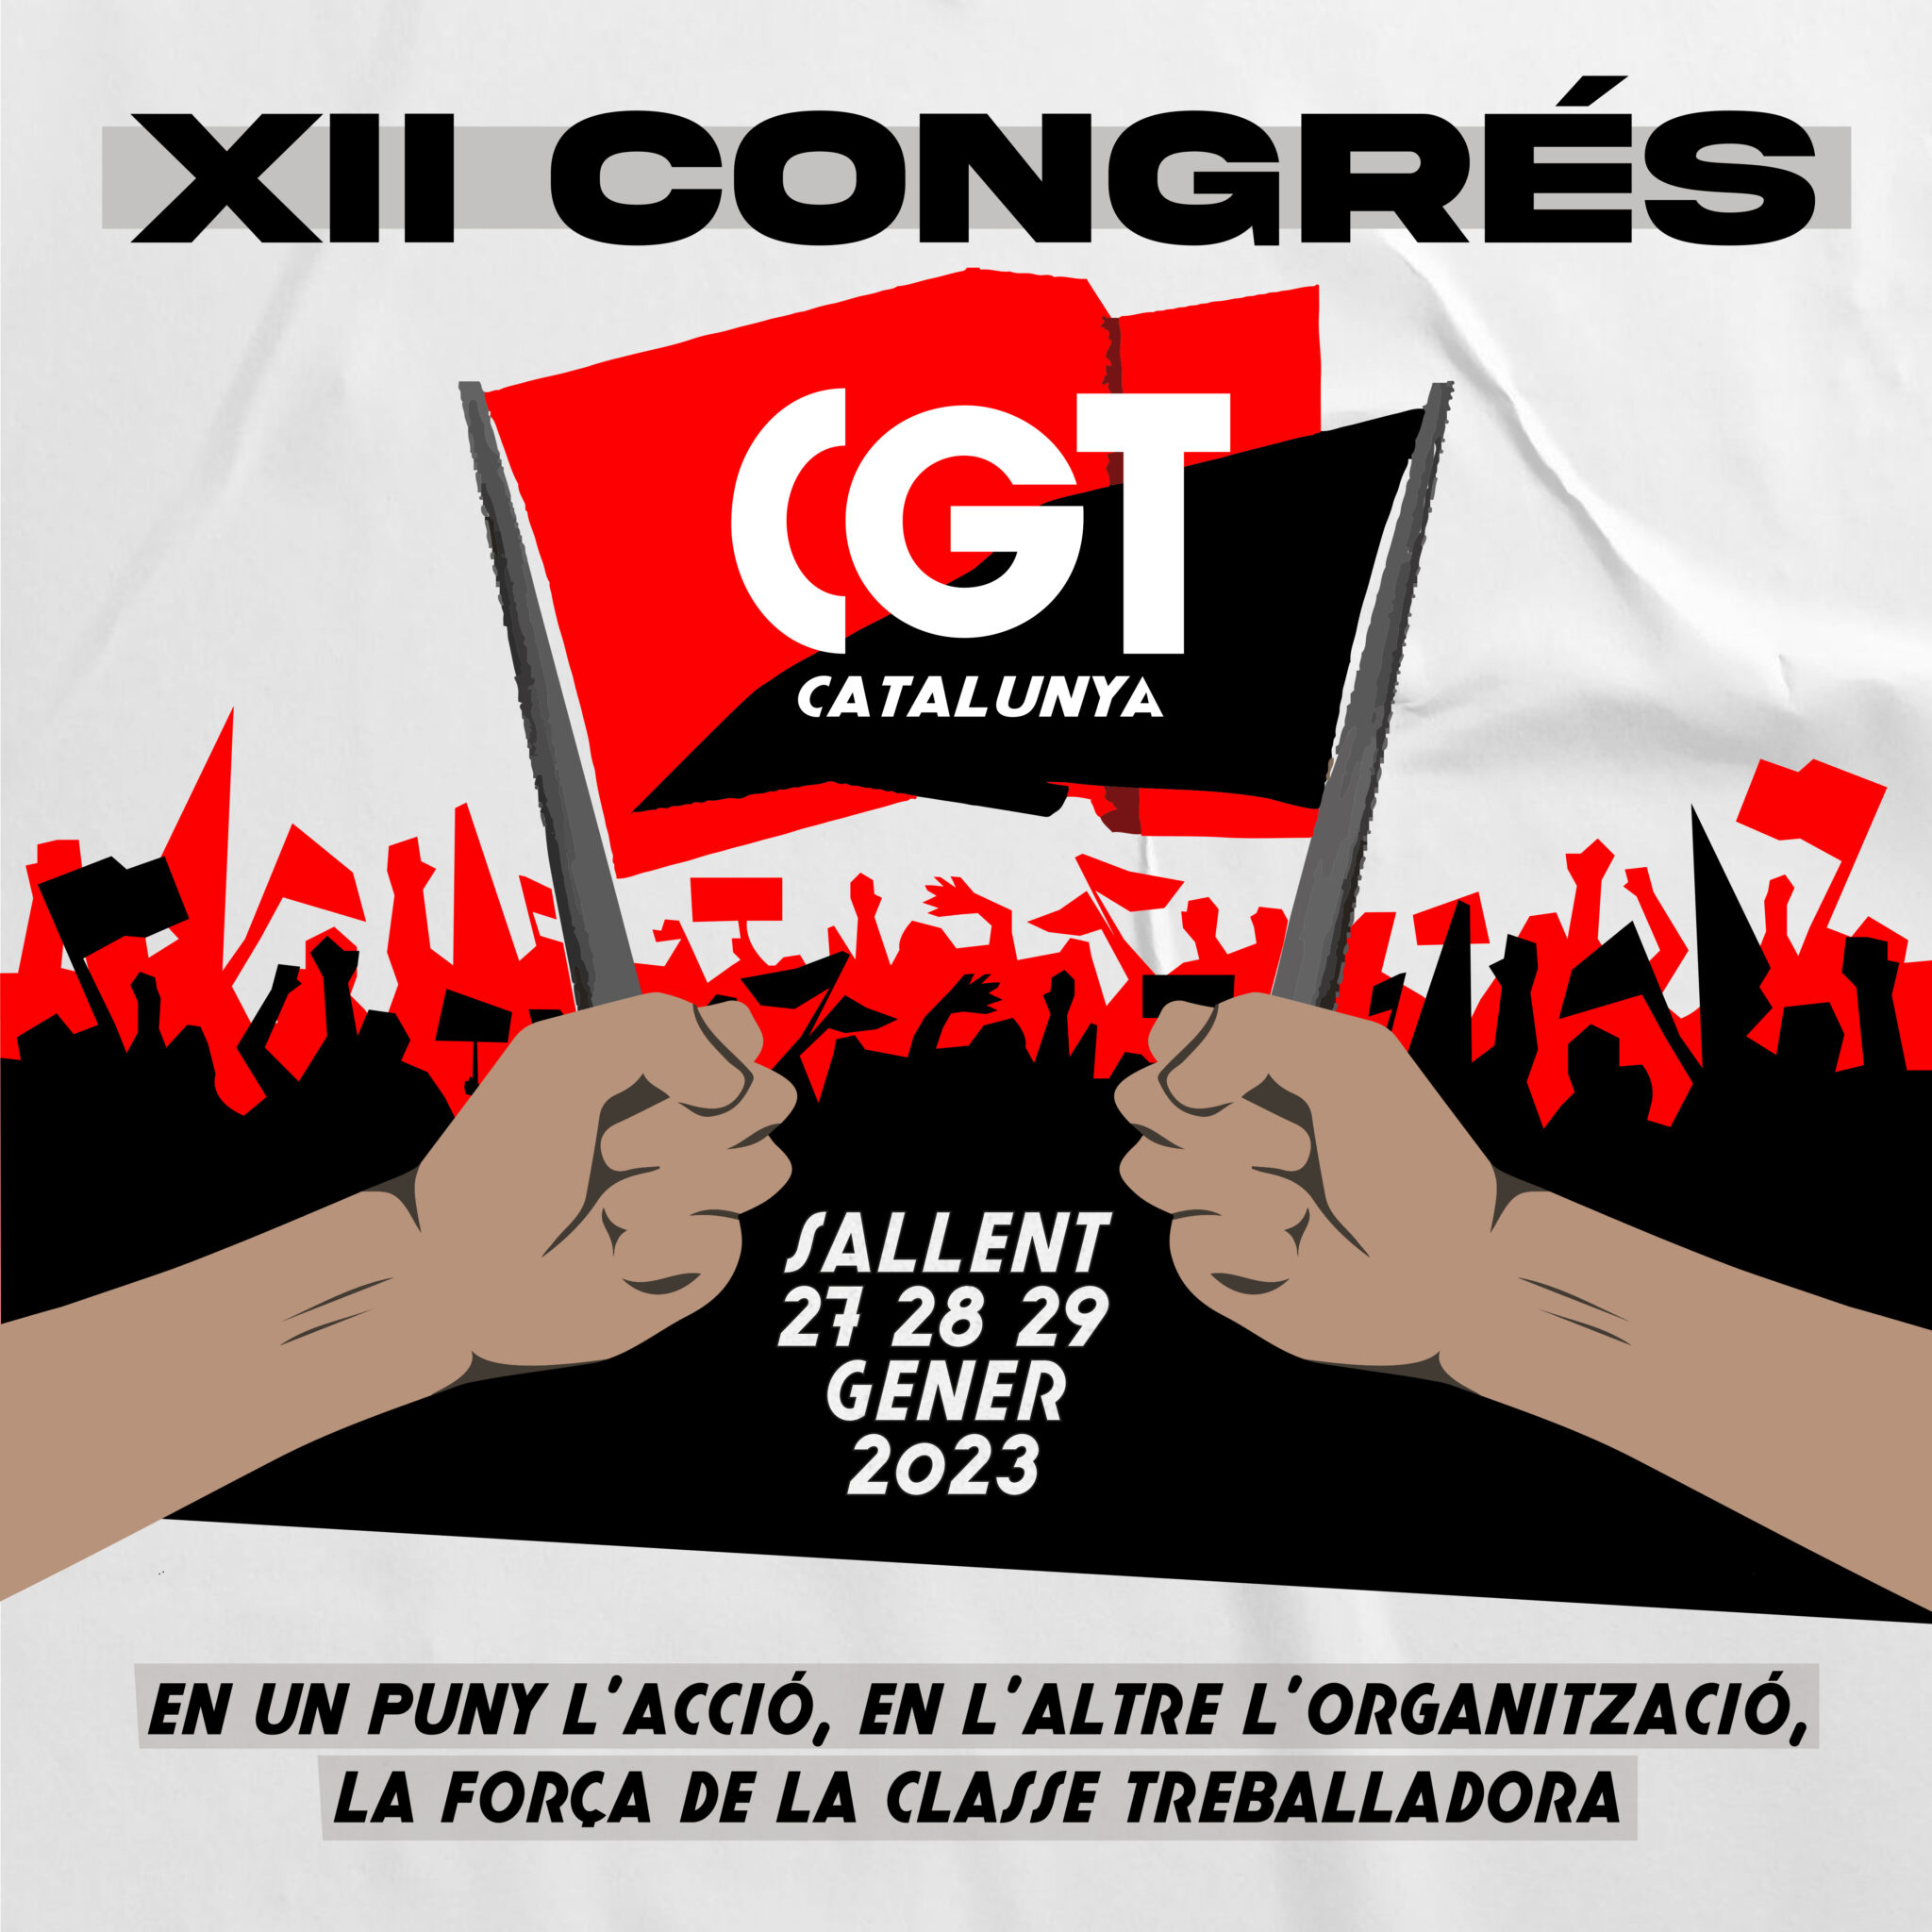 El XII Congreso de la CGT Cataluña se celebrará en Sallent